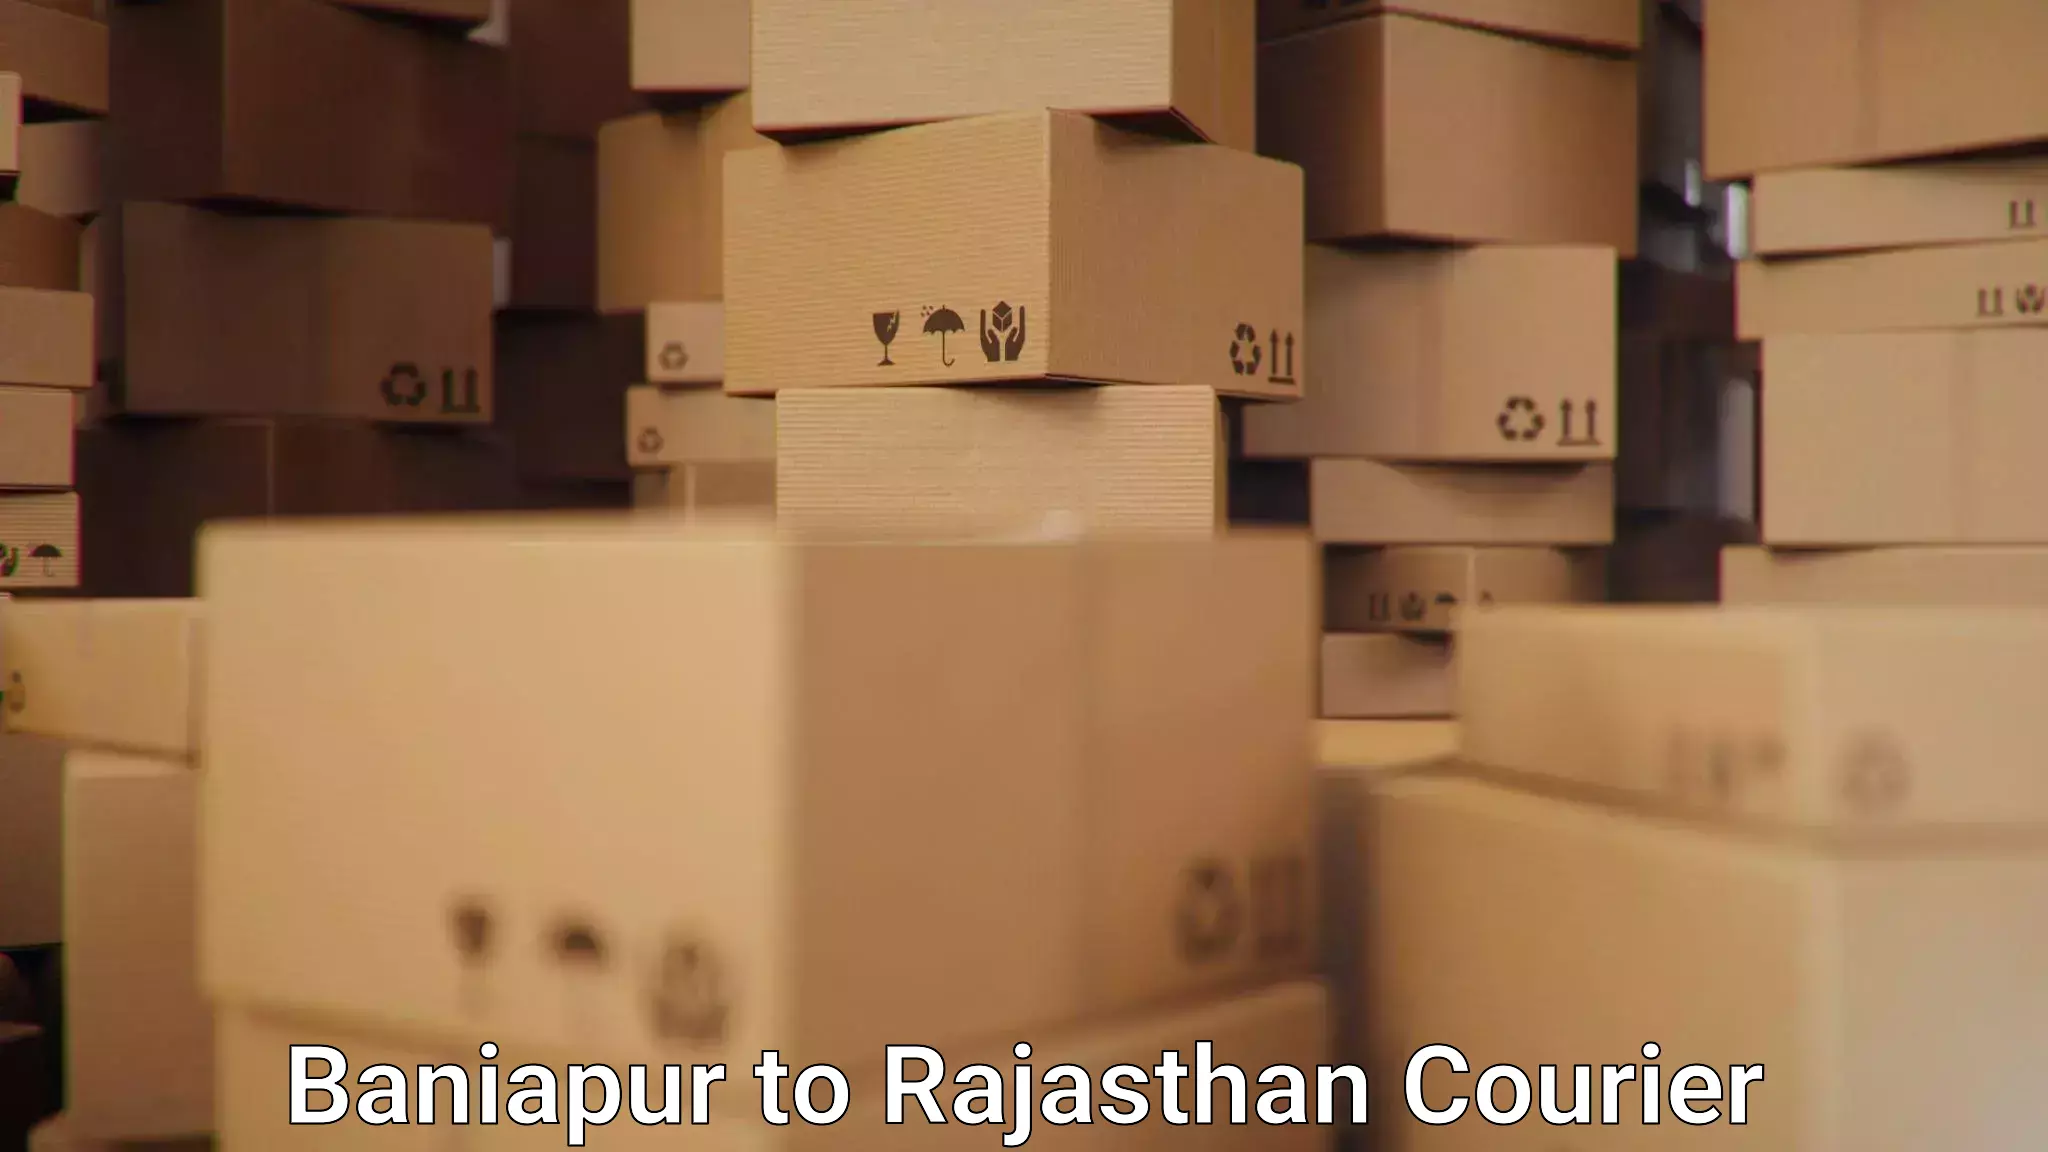 24/7 shipping services Baniapur to Parbatsar